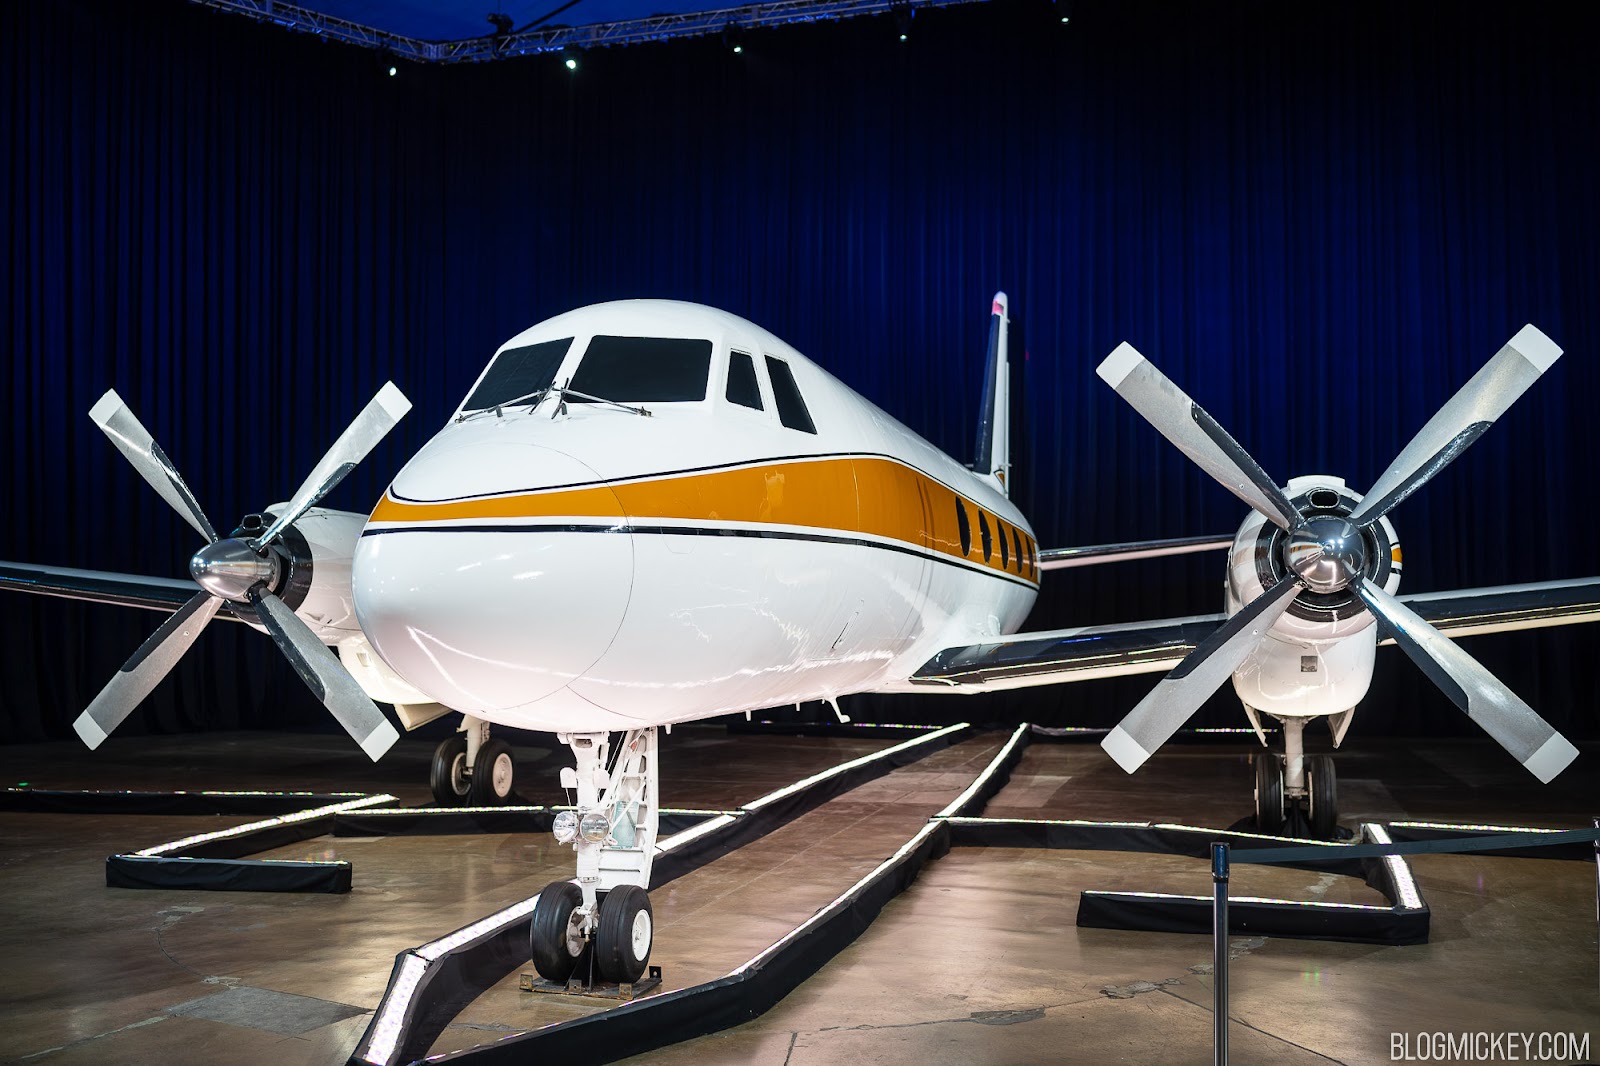 , Avions: l’avion qui a réalisé les rêves de Disney